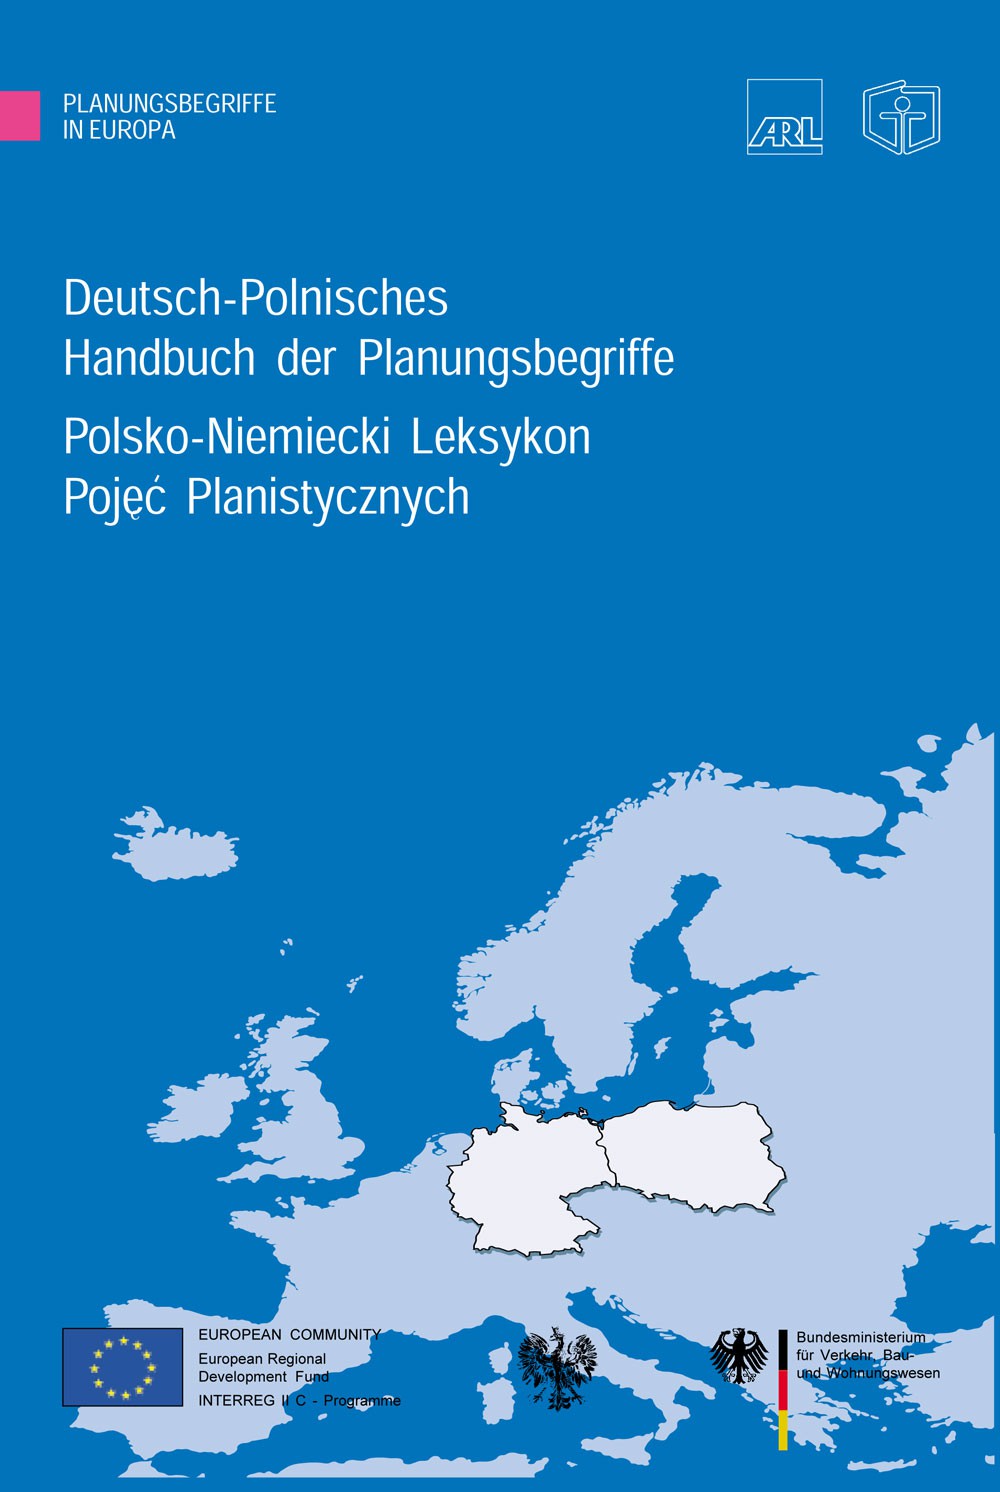 Polsko-niemiecki podręcznik pojęć planistycznych - Akademie für Raumforschung und Landesplanung (ARL)